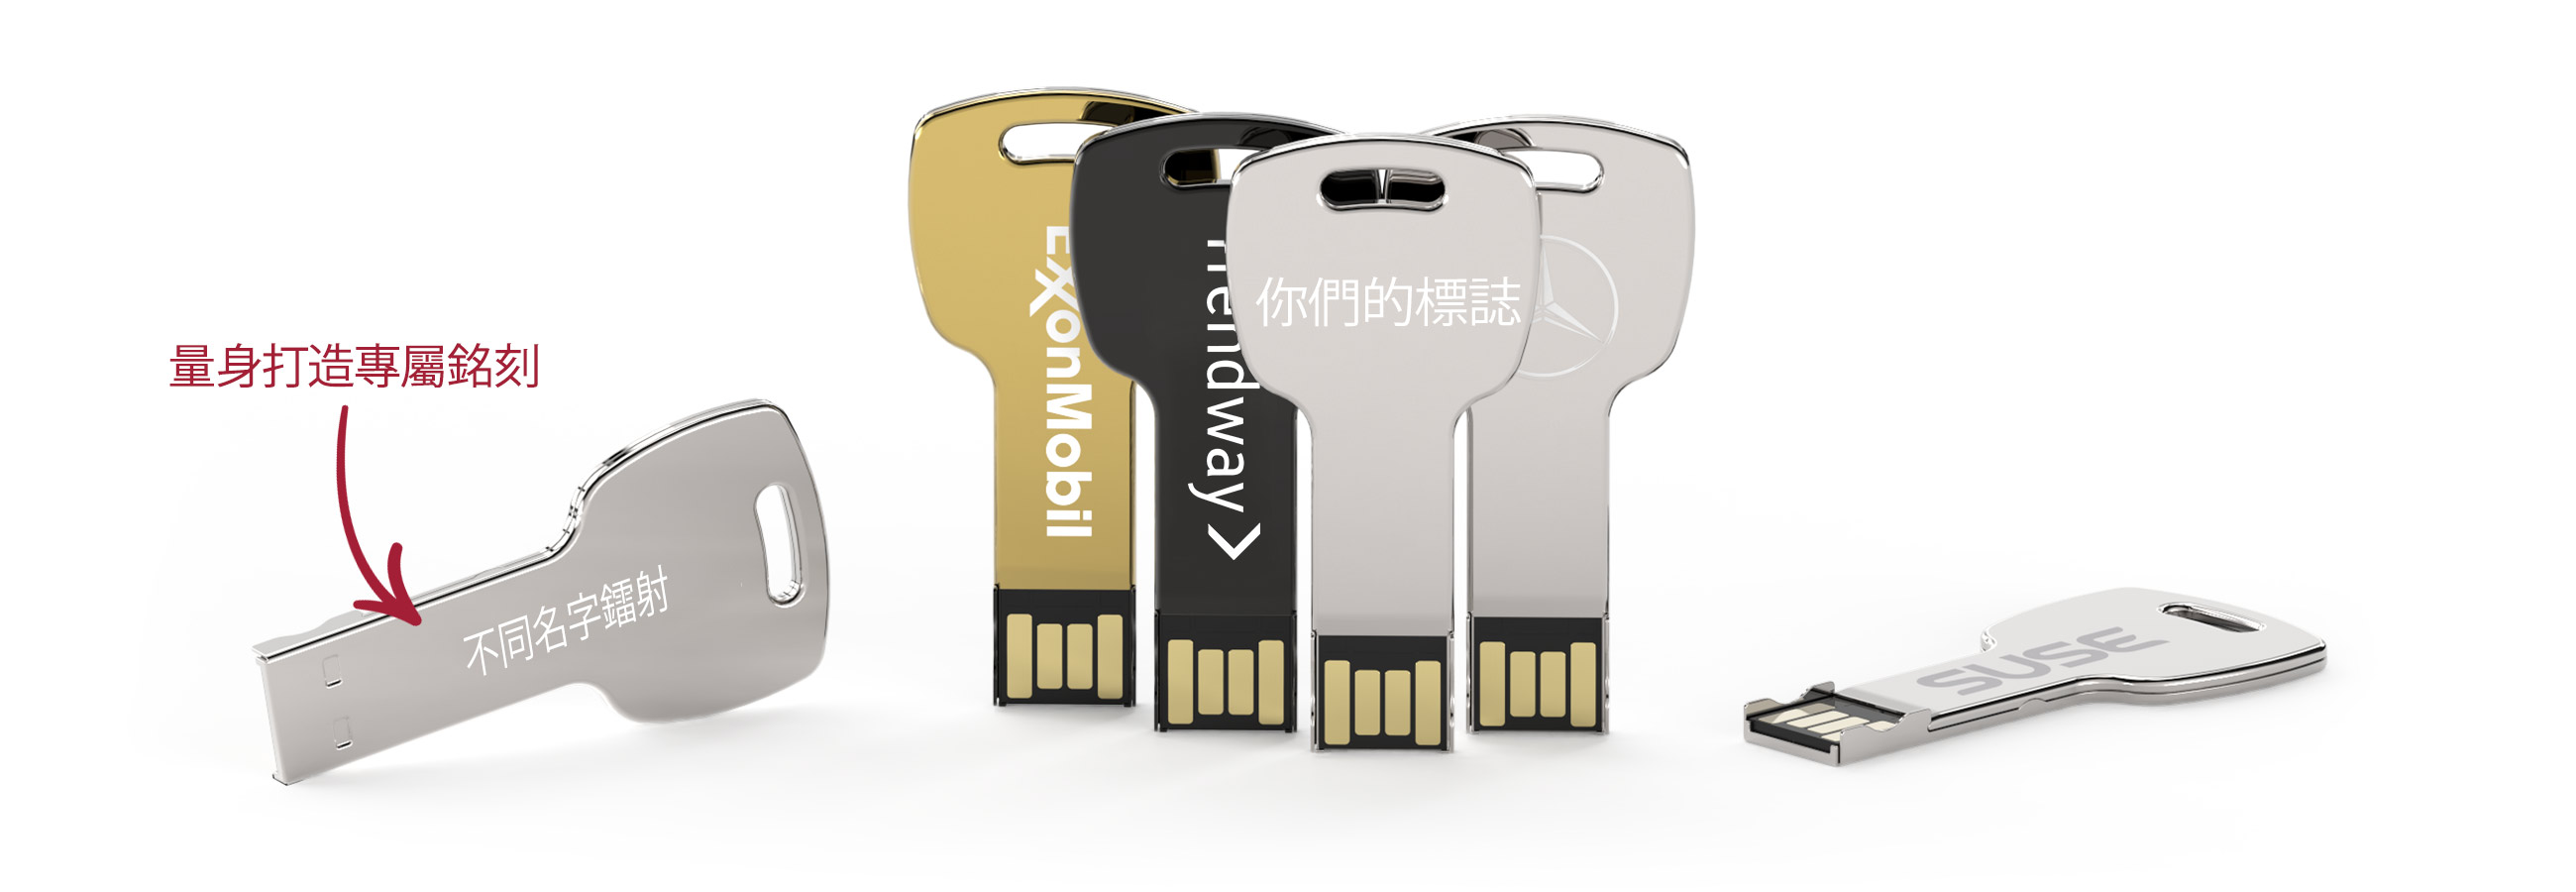 Key USB手指